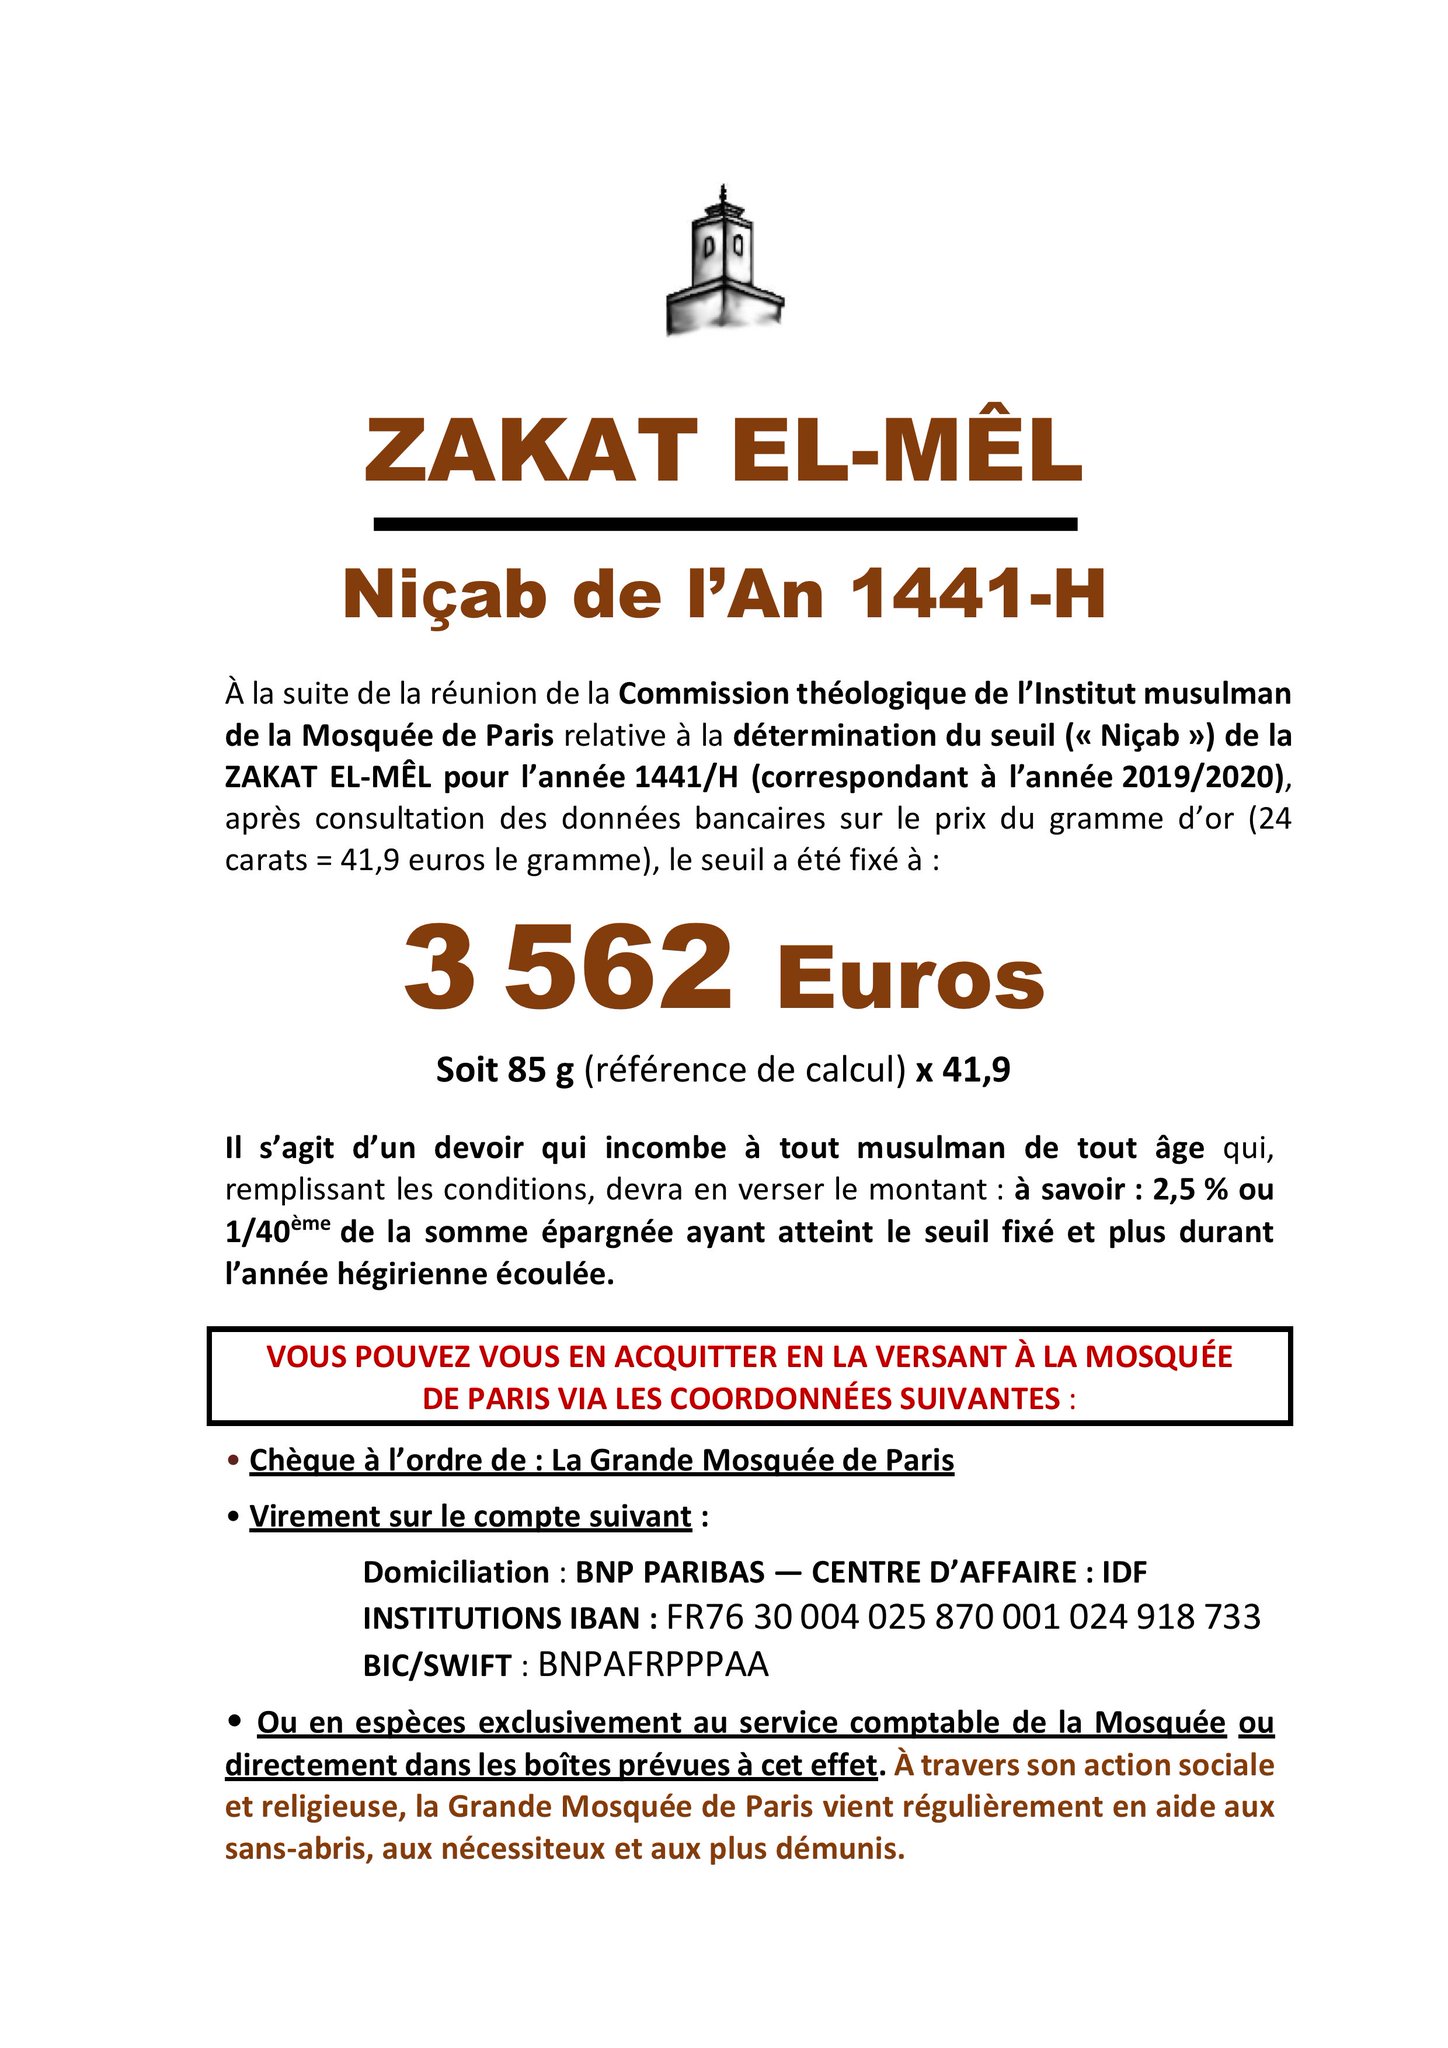 Grande Mosquée de Paris on Twitter: "#ZakatElMel #Zakat C'est la fin de  l'année musulmane 1440/H, n'oubliez pas de sortir votre "ZAKAT EL MÊL" dont  le seuil (Niçab) a été fixé à 3562